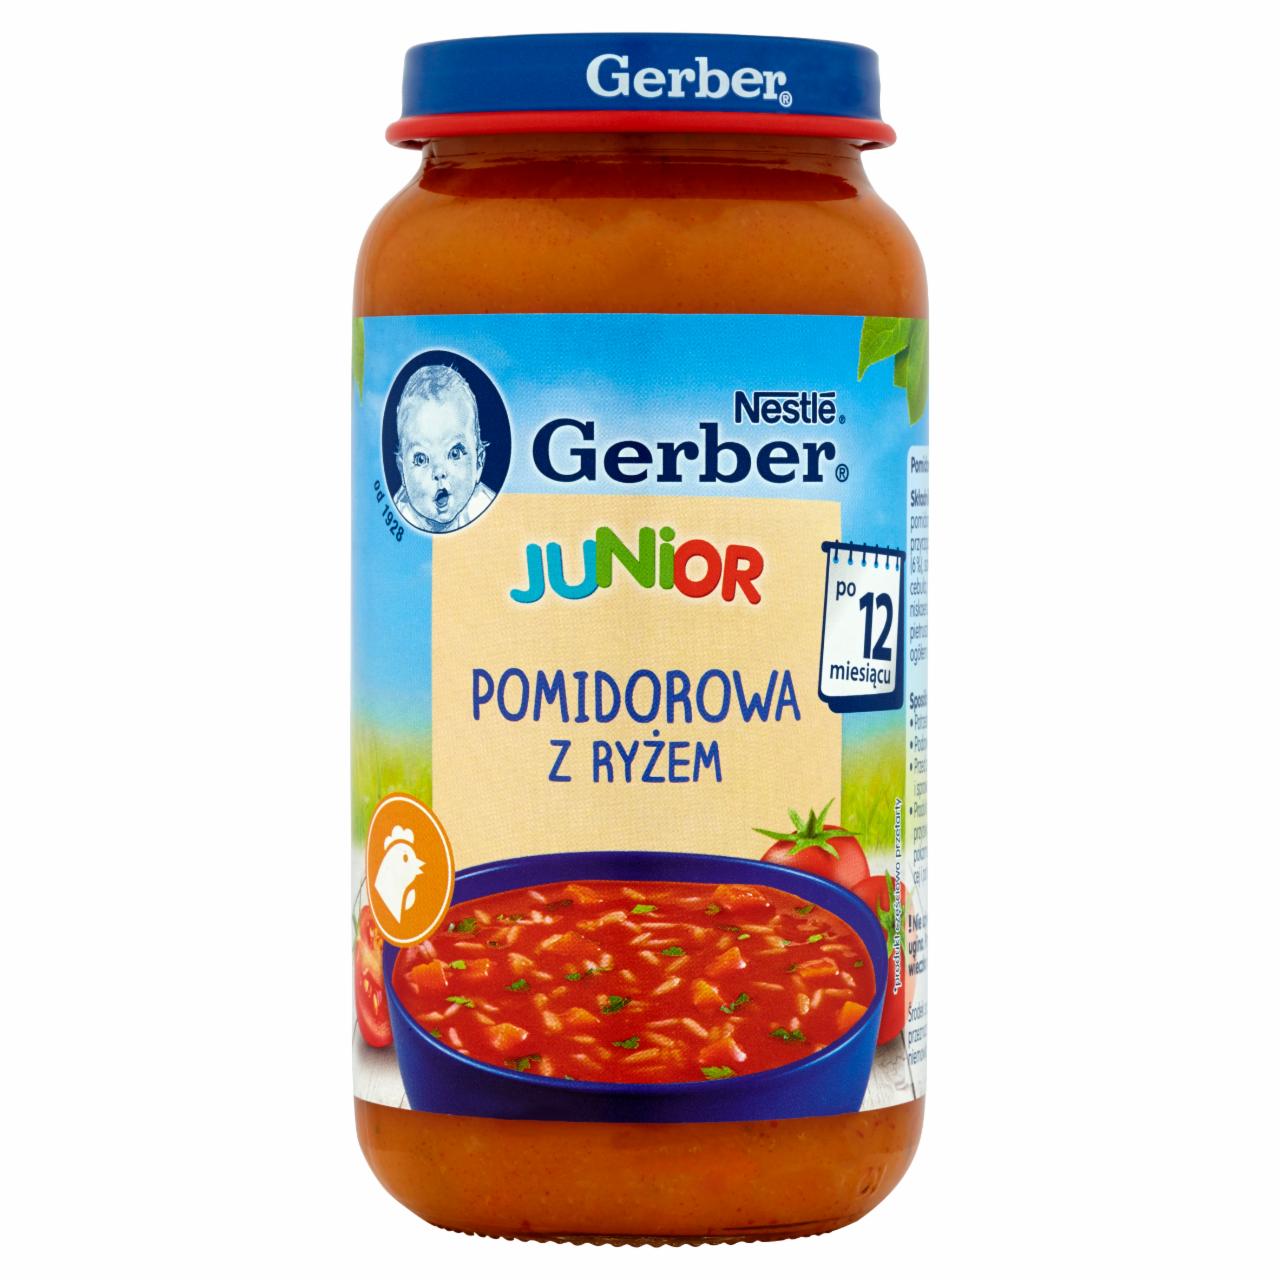 Zdjęcia - Gerber Pomidorowa z ryżem dla dzieci po 12. miesiącu 250 g